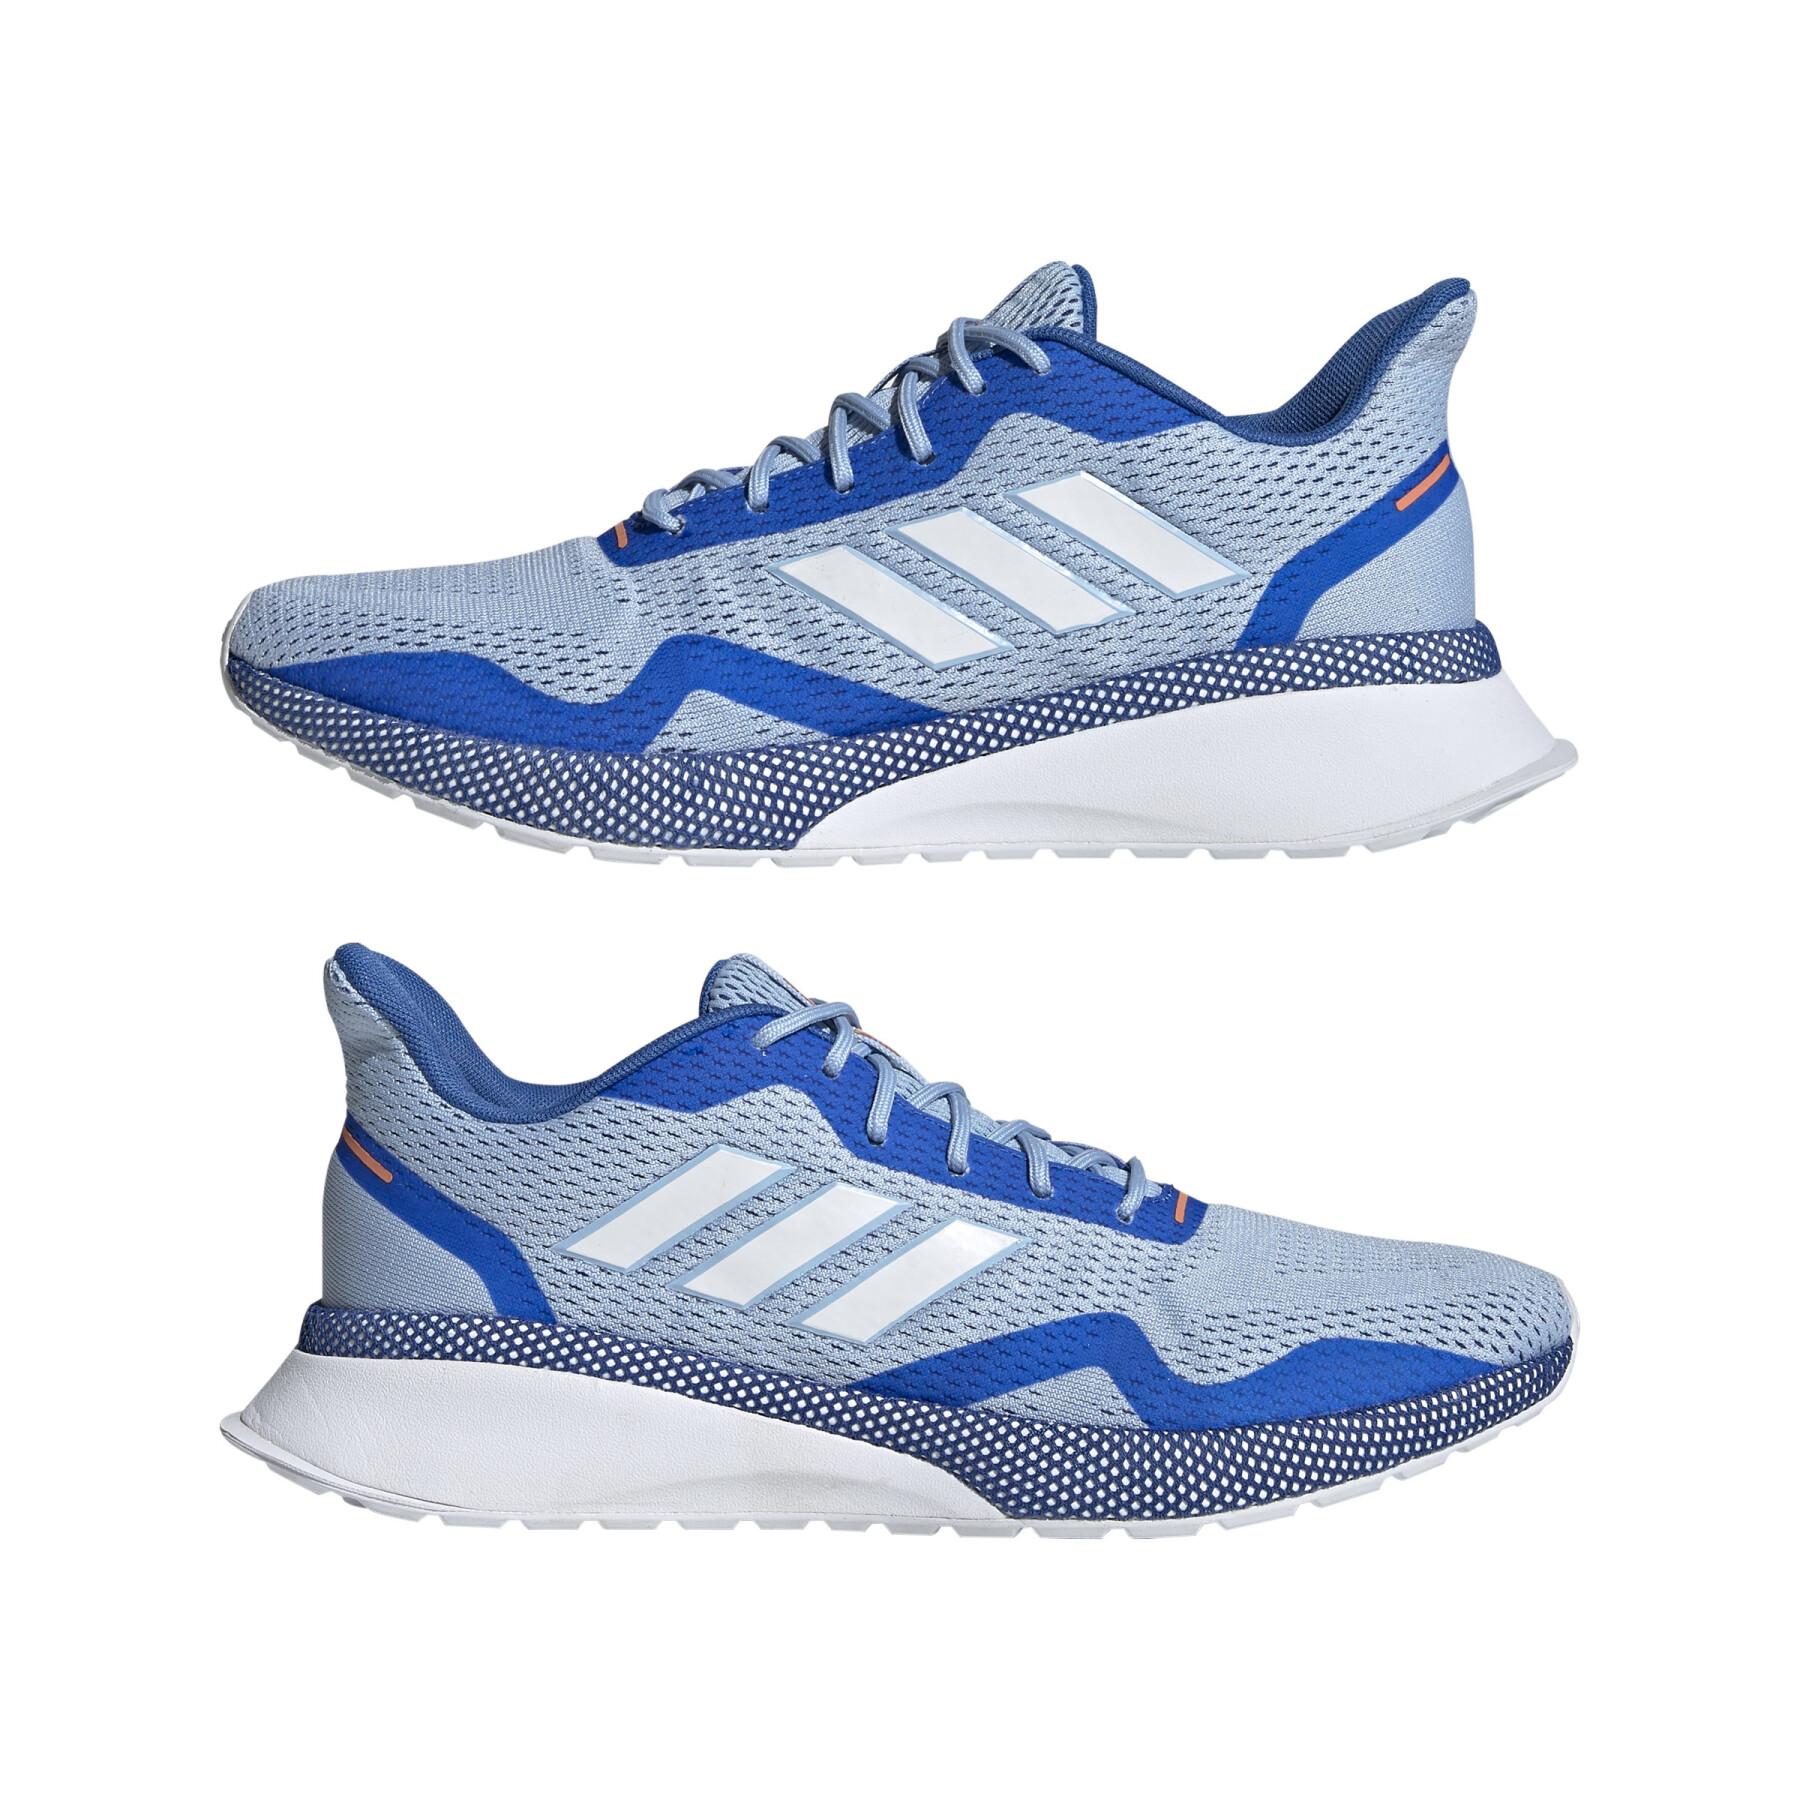 Chaussures de running femme adidas Nova Run X